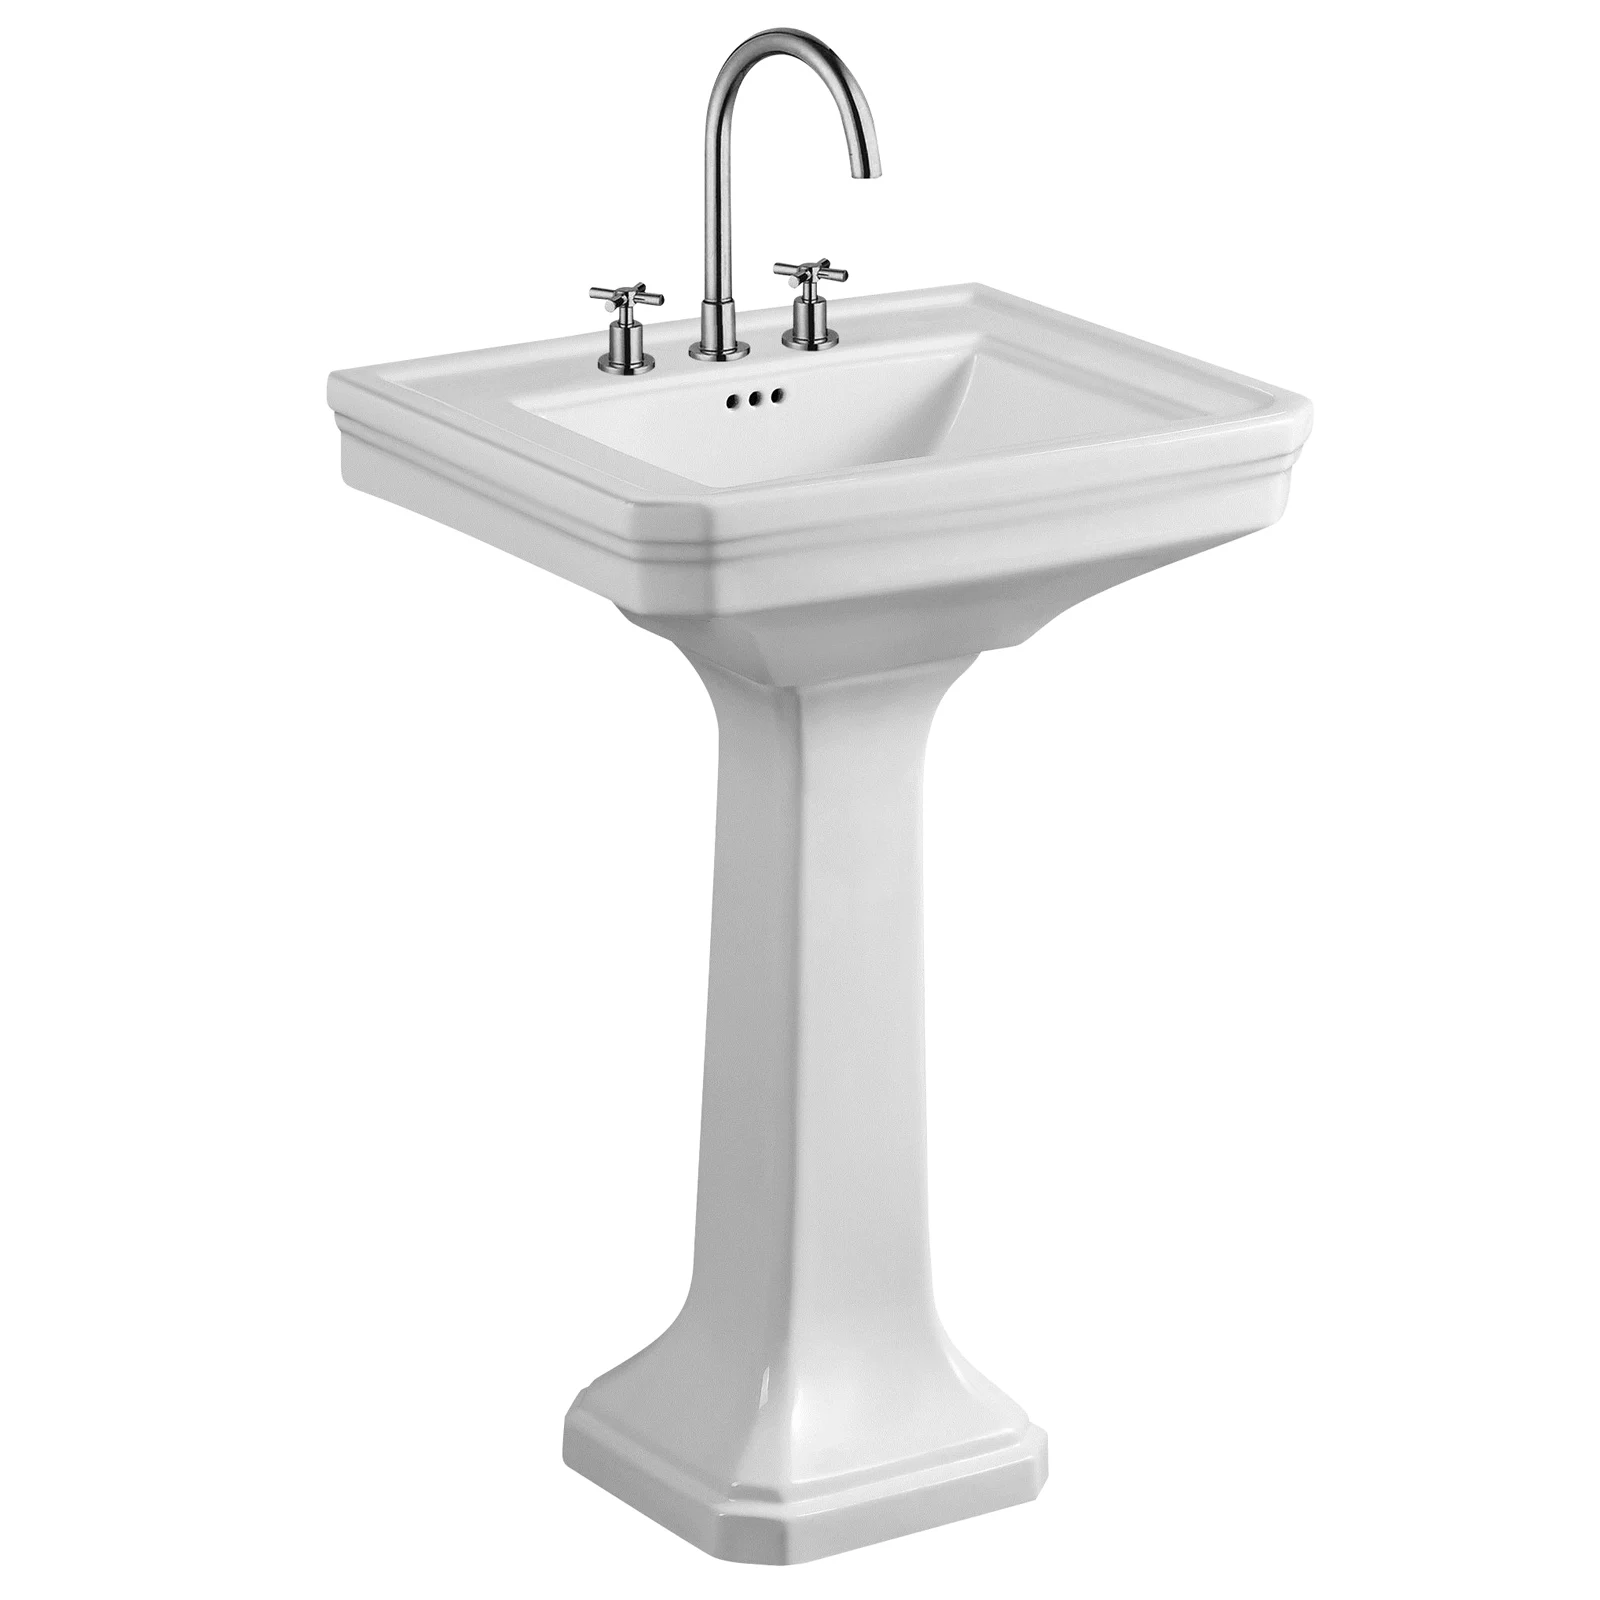 A white pedestal sink